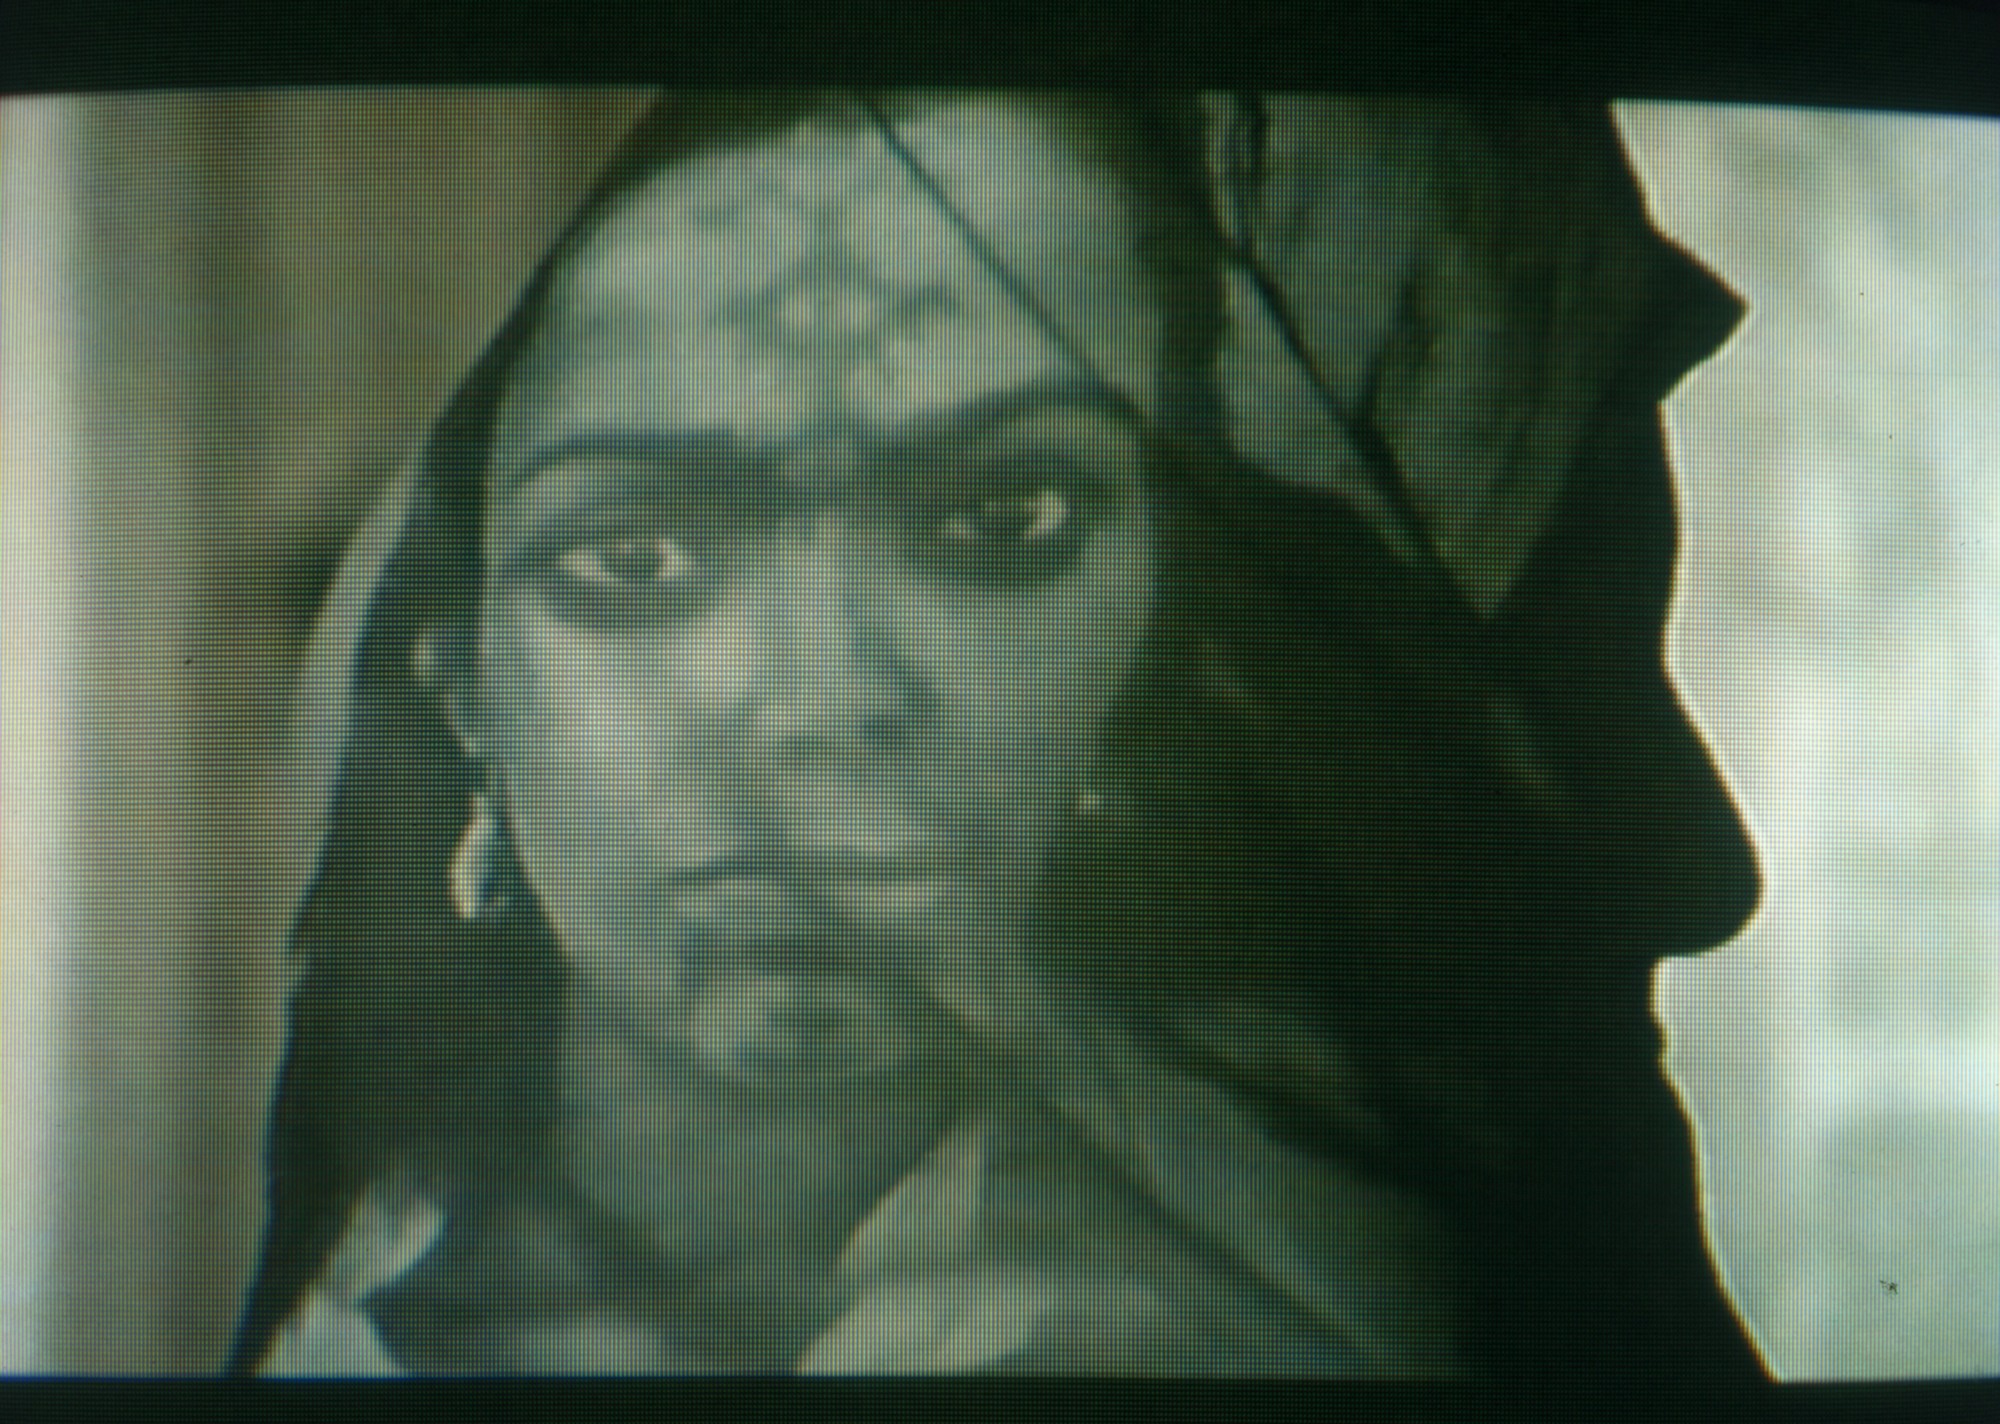 Film still from Frantz Fanon Black Skin: White Mask